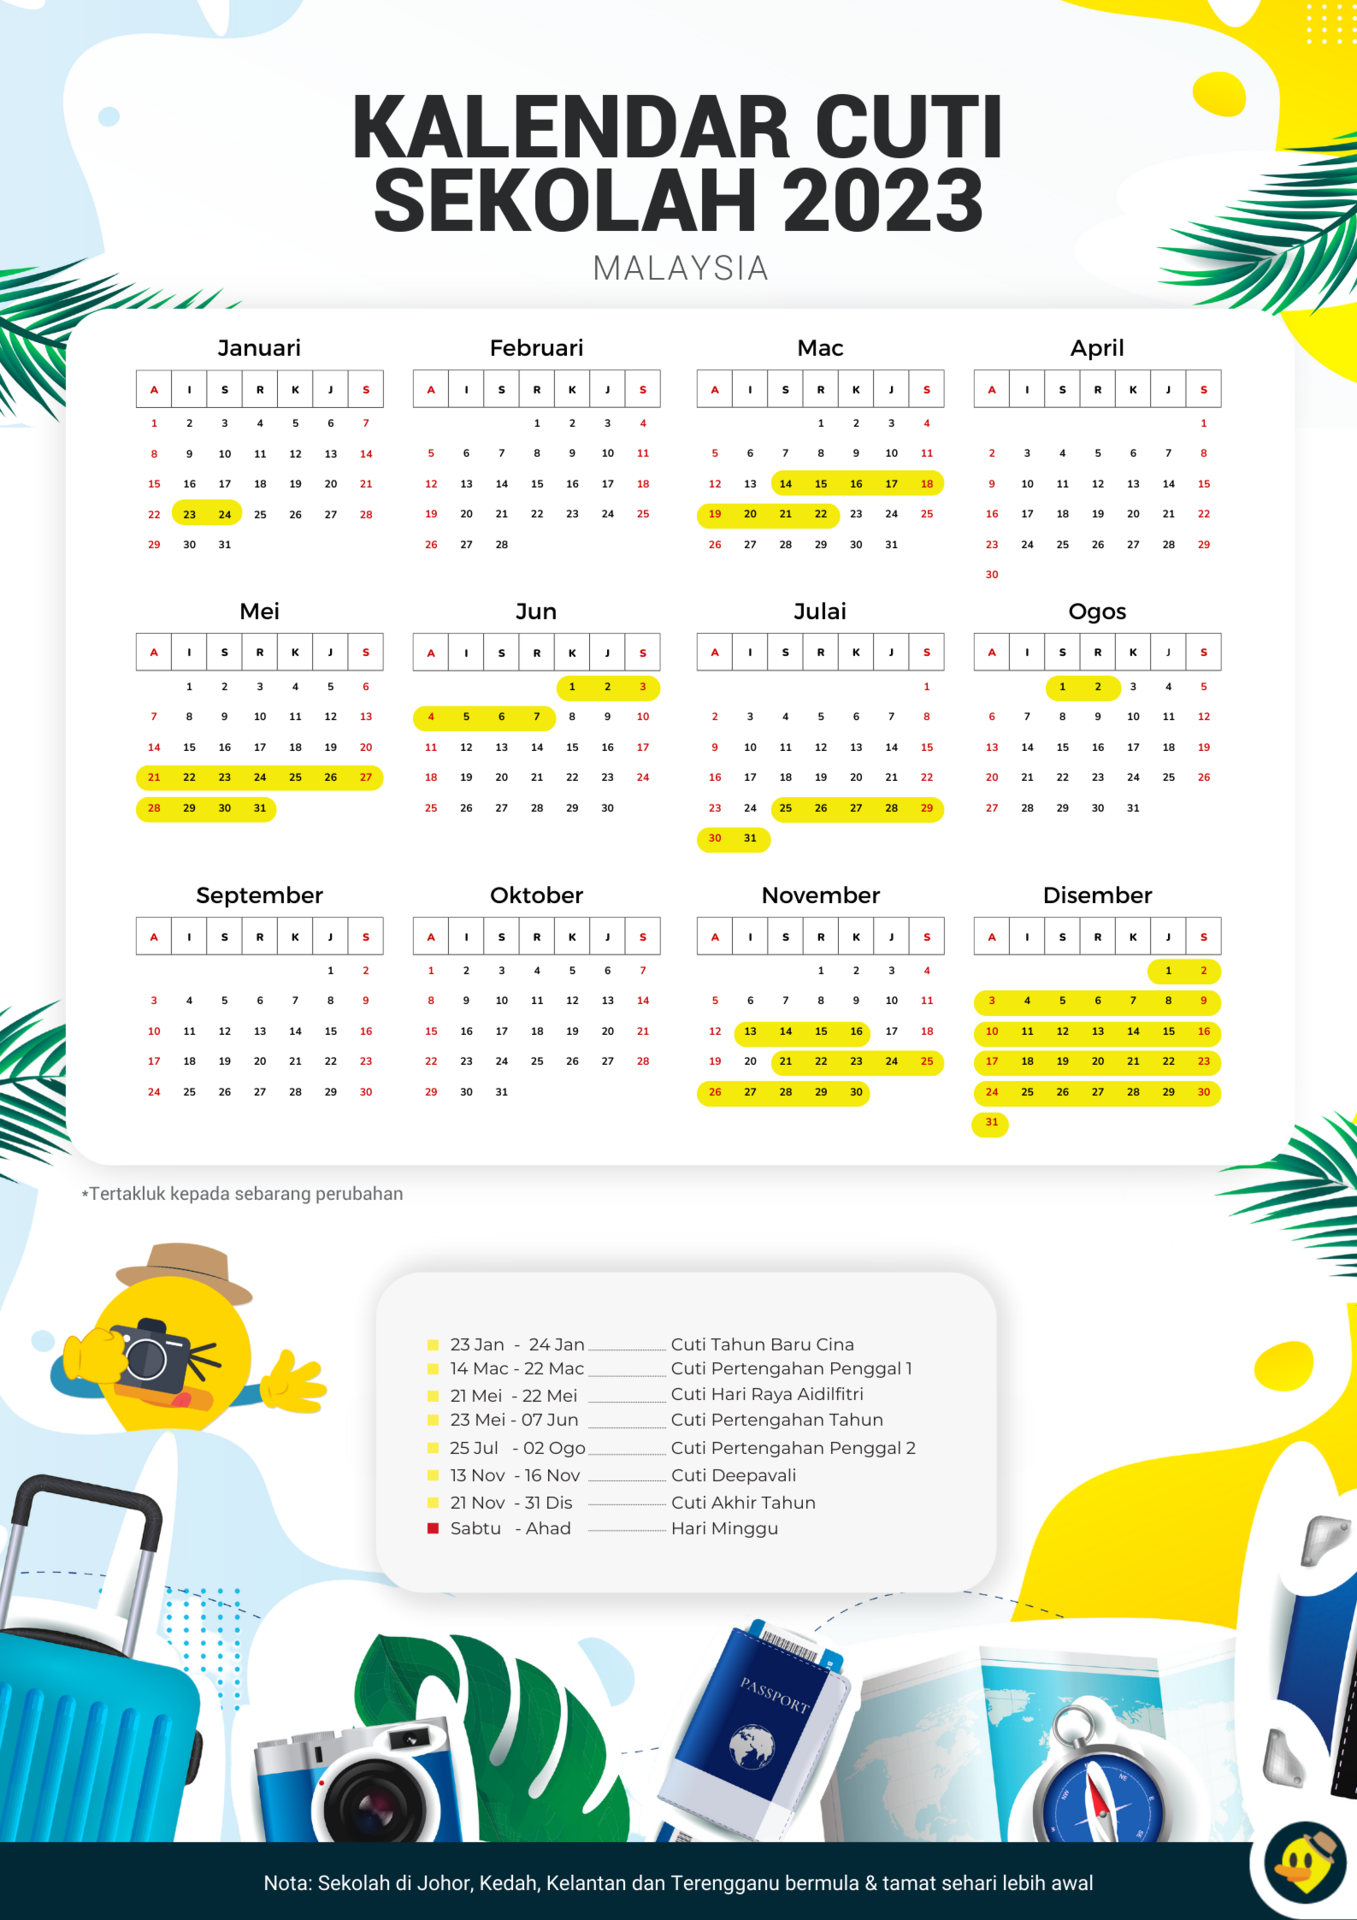 Kalendar Cuti Sekolah Malaysia 2023 © Letsgoholidaymy